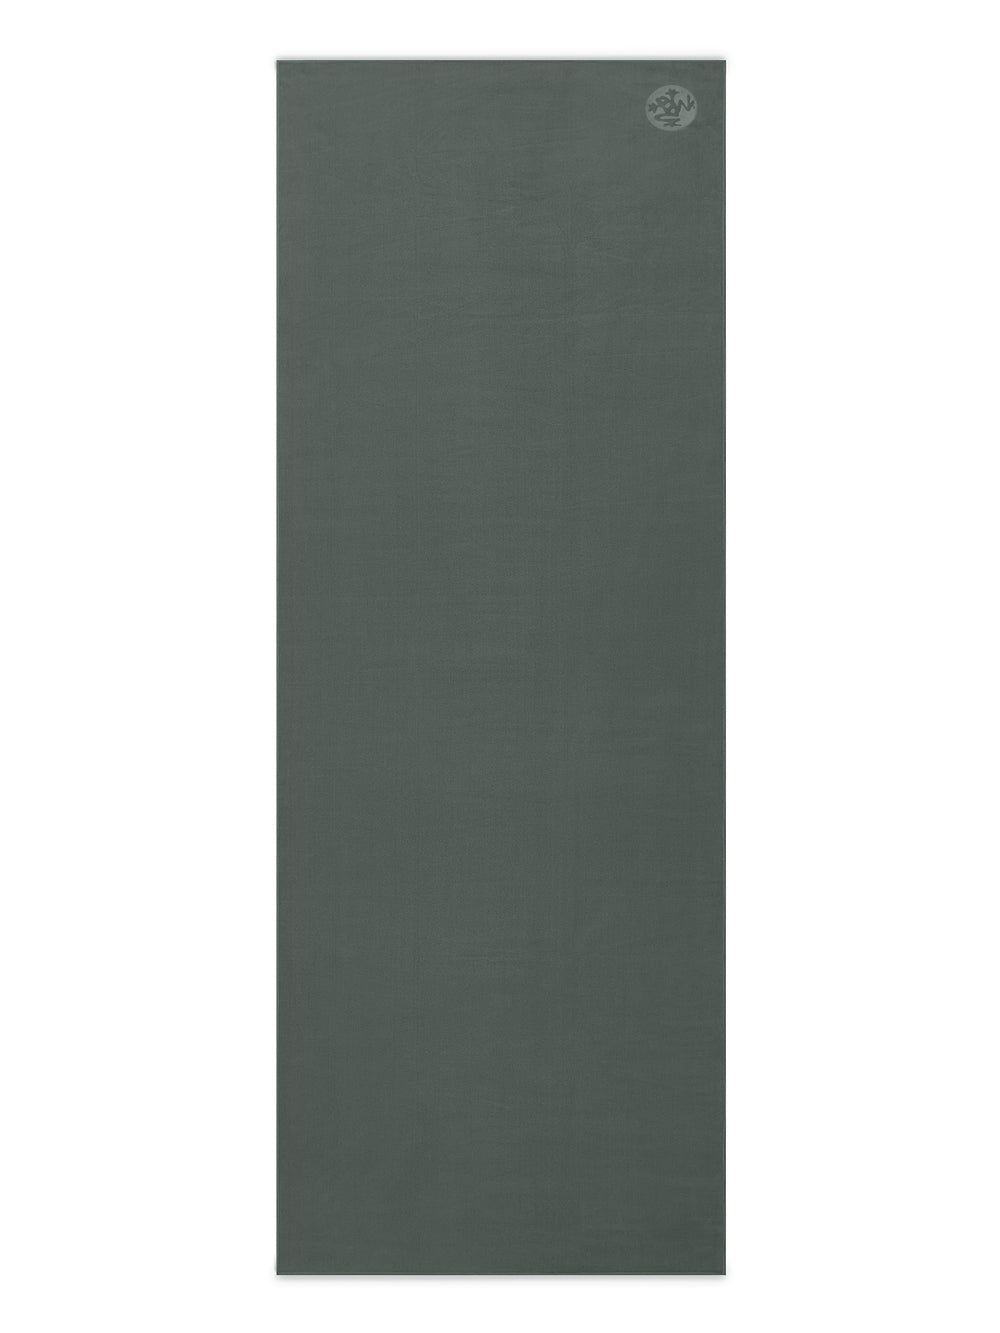 [Manduka] eQua マットタオル ロング(200cm) (L) / EQUA YOGA MAT TOWEL LONG マンドゥカ ヨガグッズ 滑らない 大きいサイズ [A] 60_1